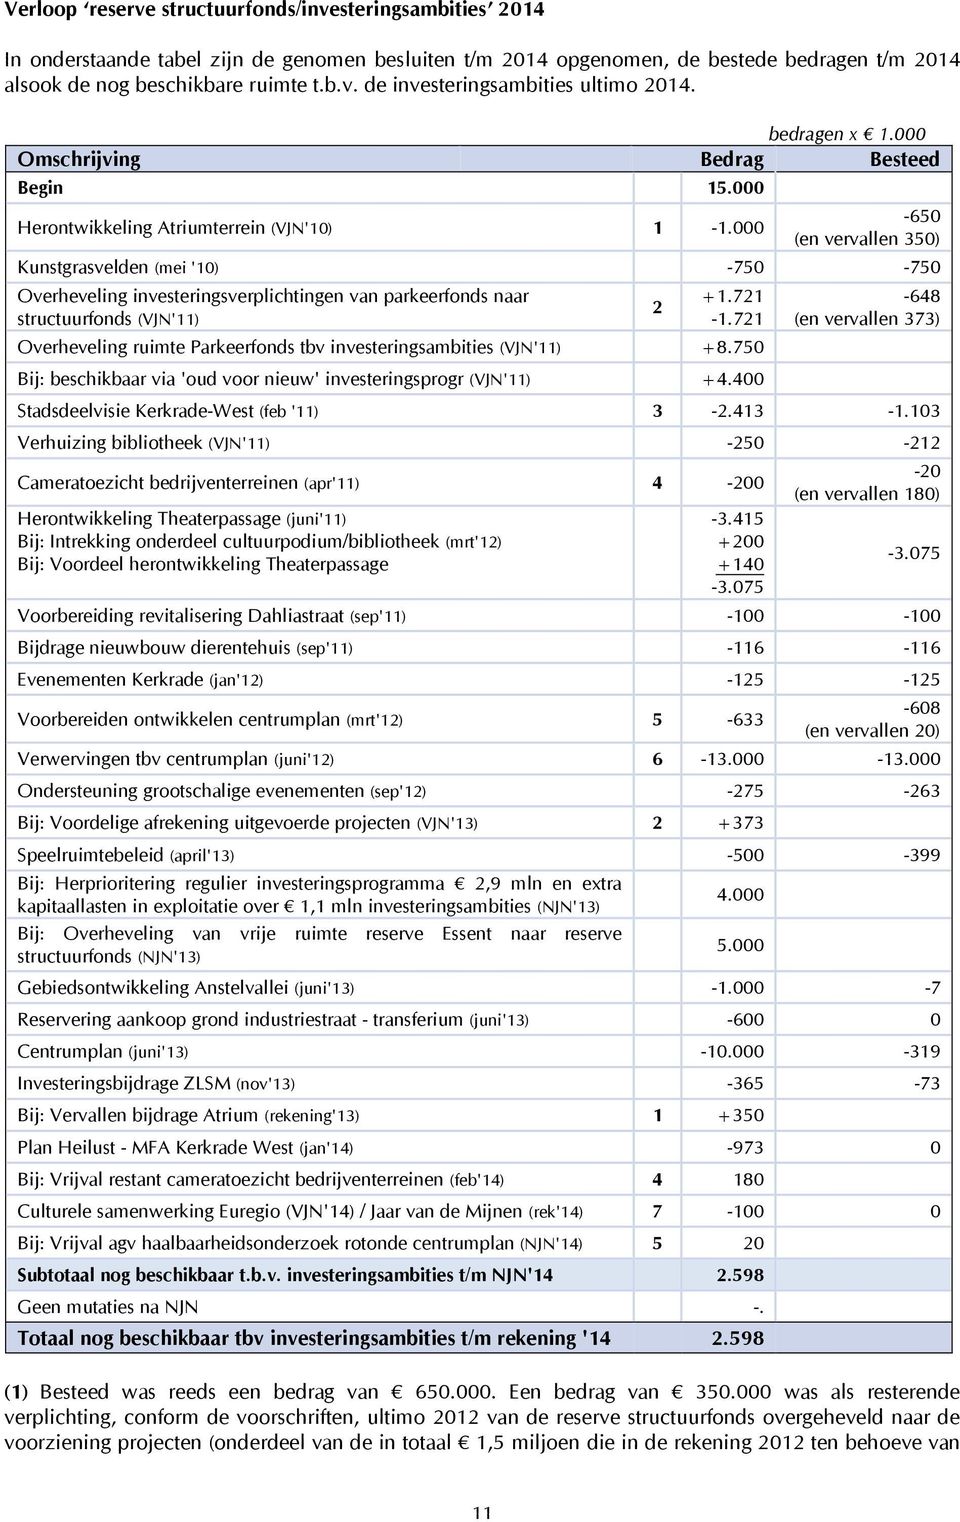 000-650 (en vervallen 350) Kunstgrasvelden (mei '10) -750-750 Overheveling investeringsverplichtingen van parkeerfonds naar structuurfonds (VJN'11) 2 +1.721-1.